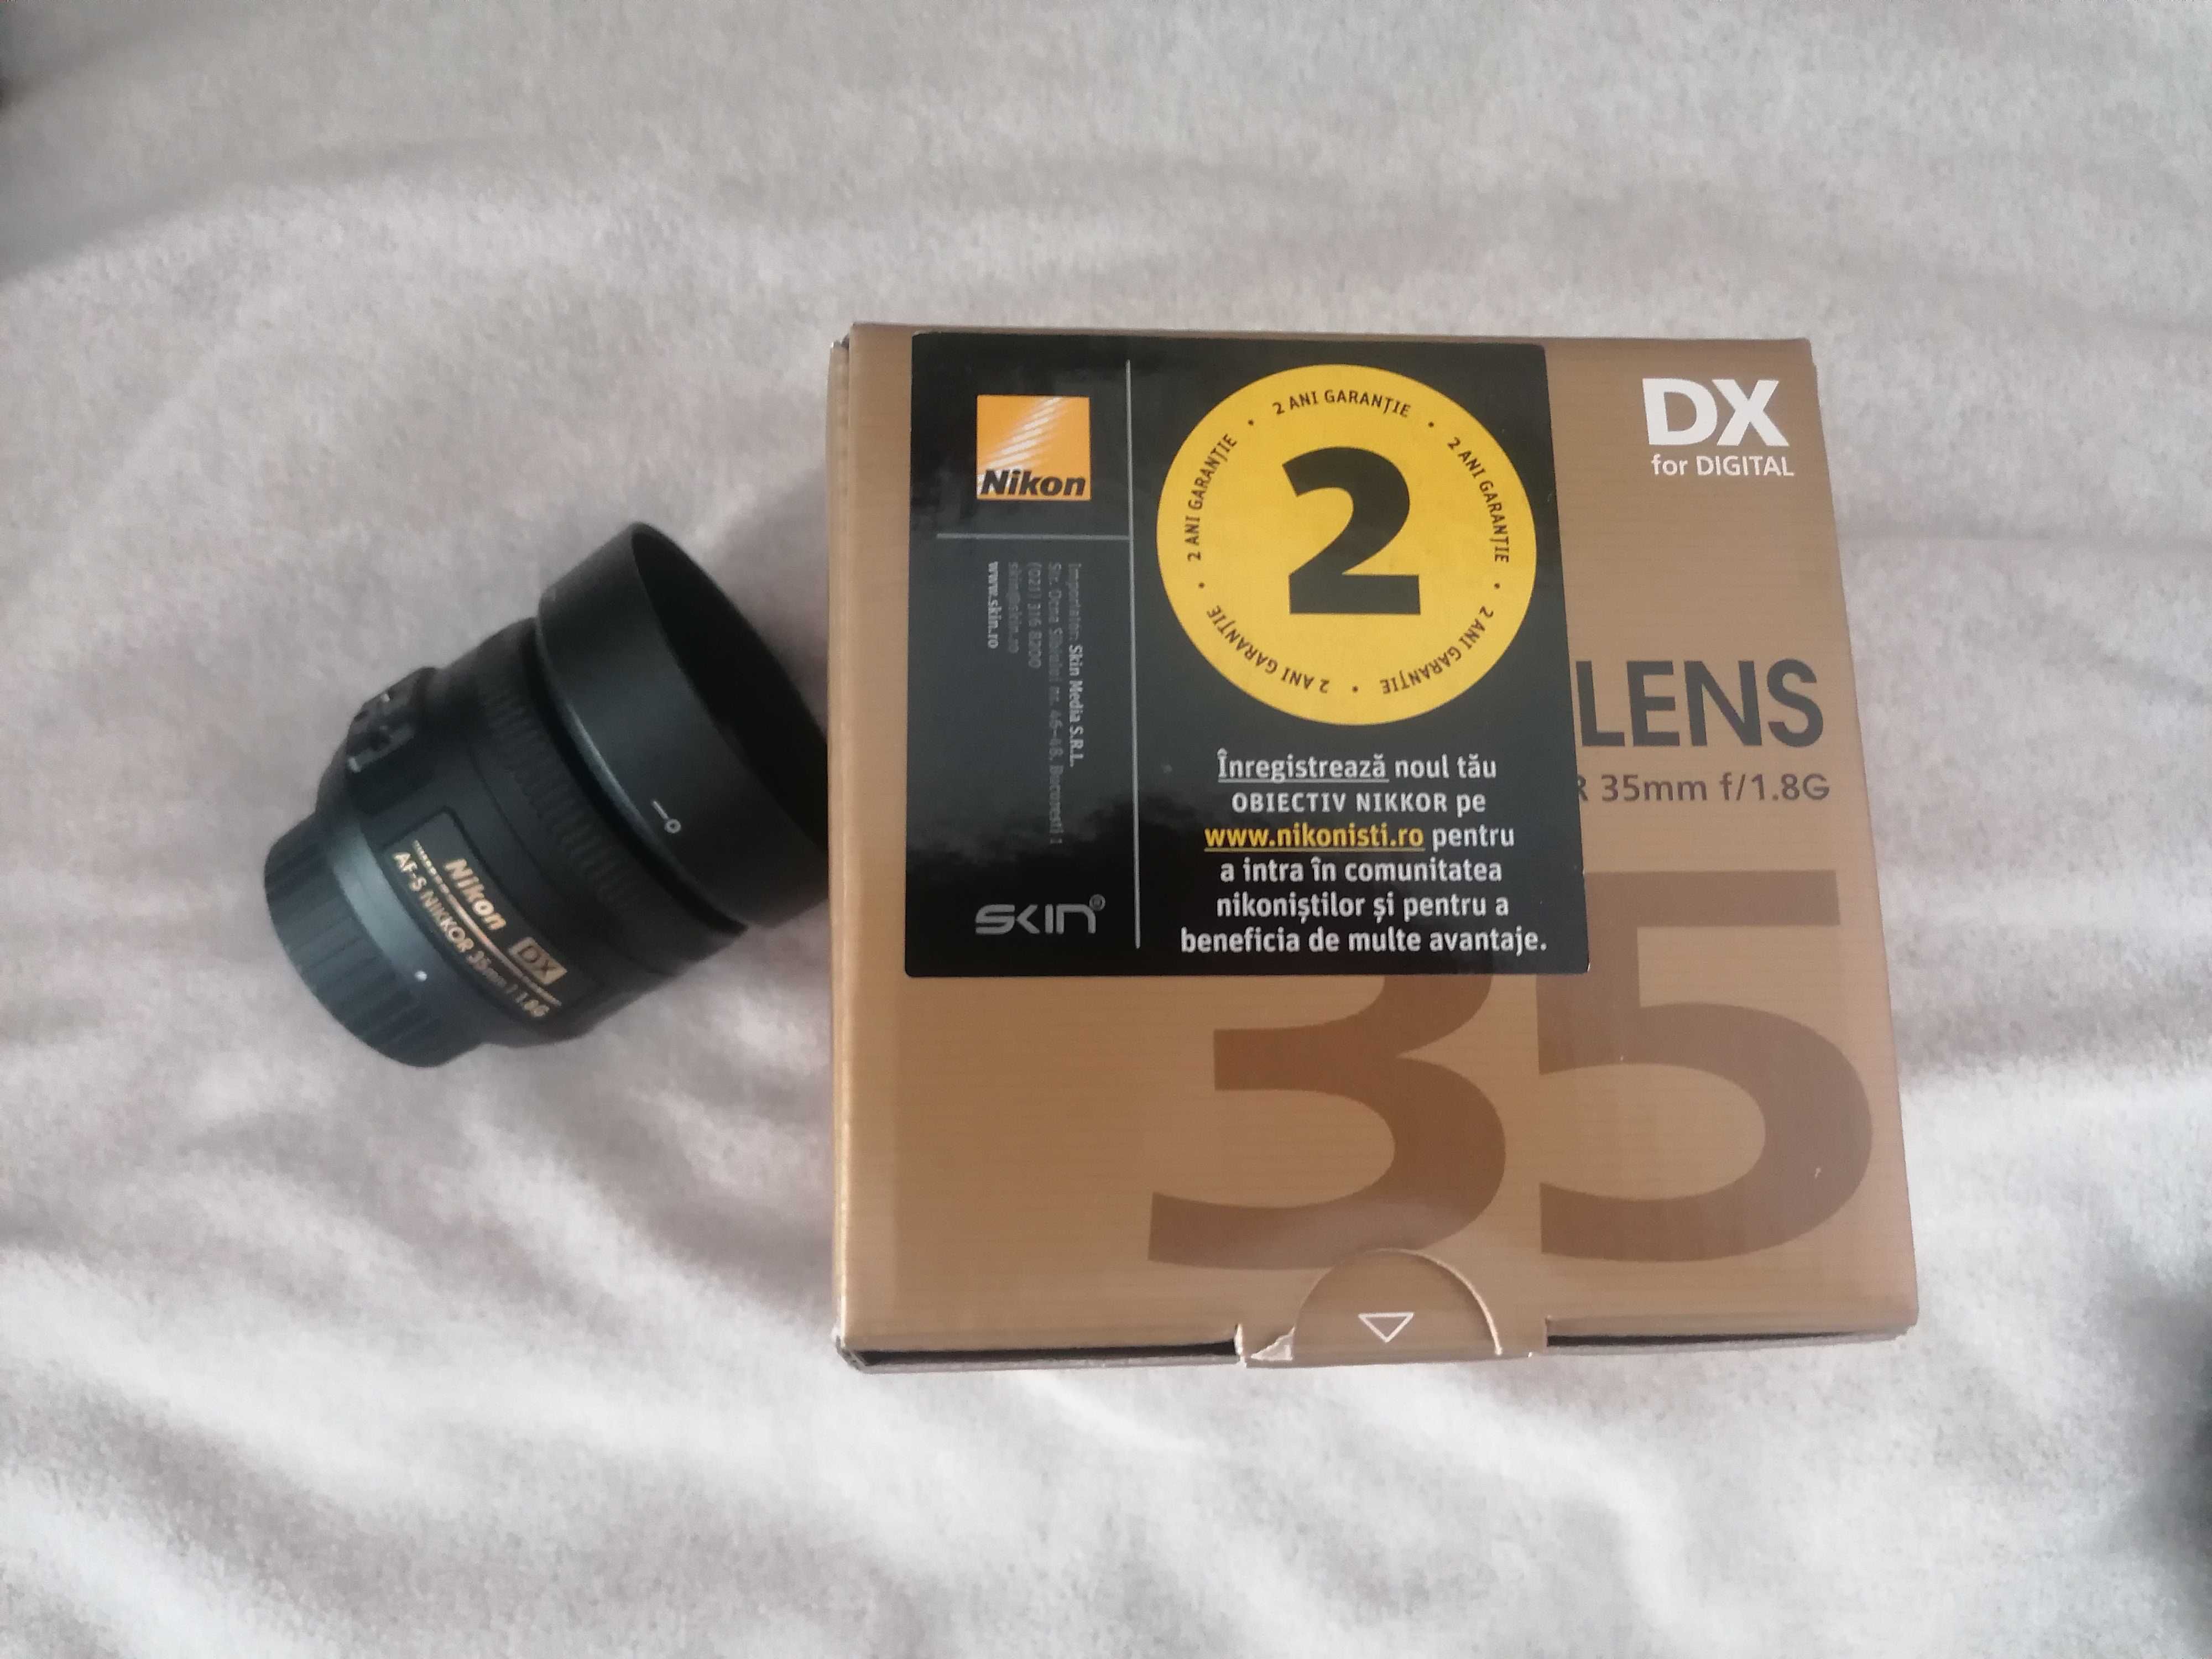 Nikon D7200 full kit 2018